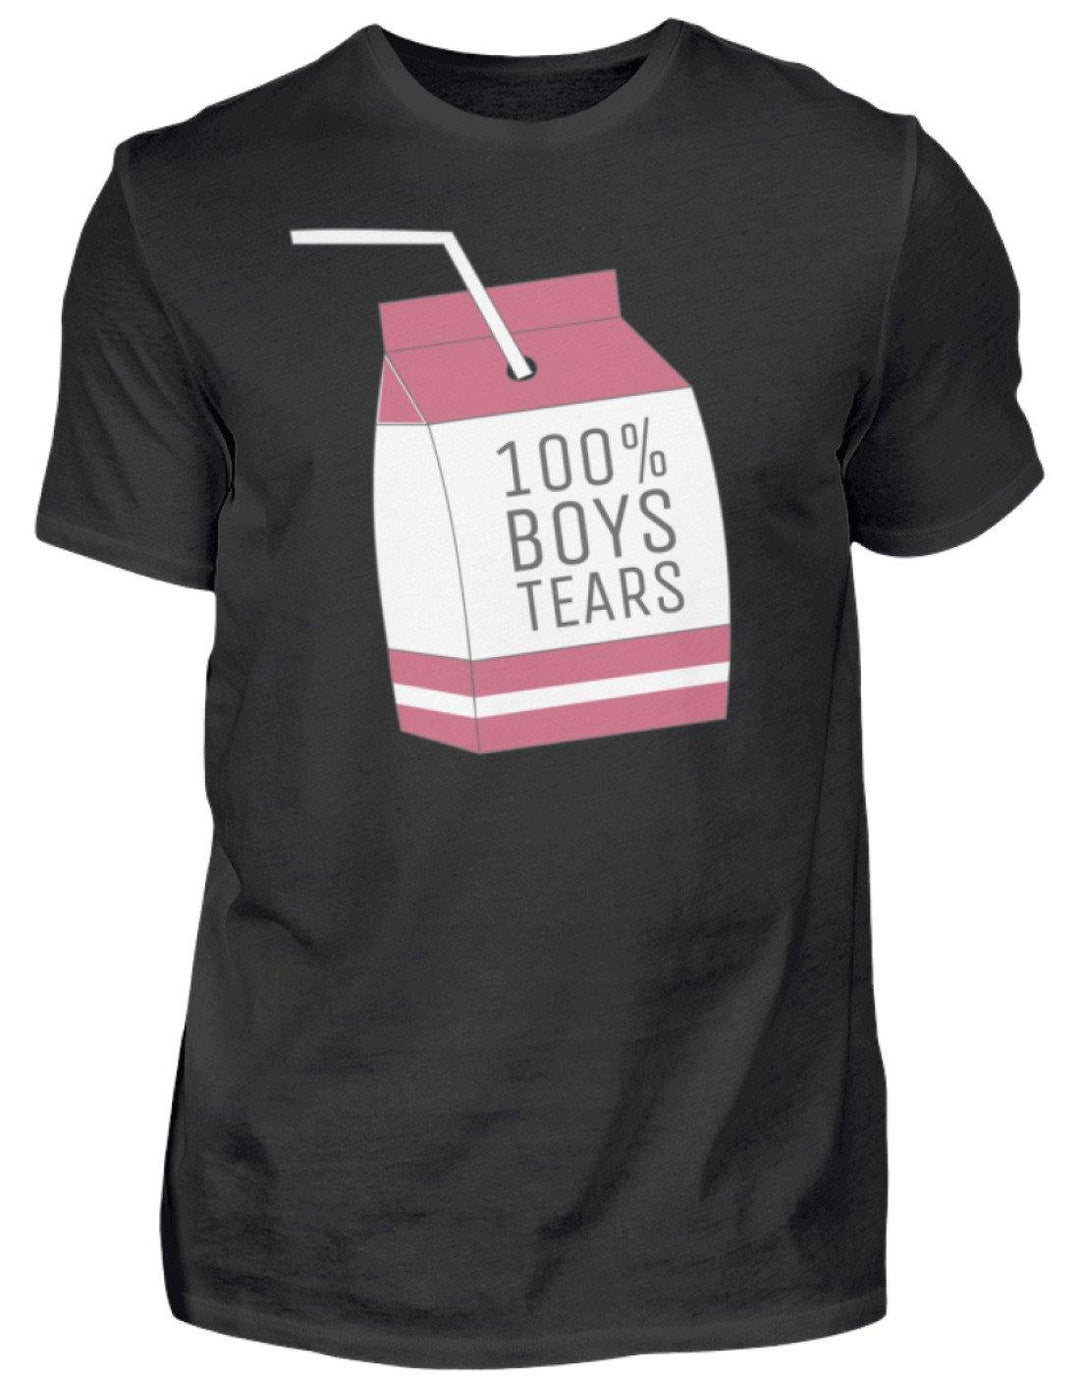 100% Boys Tears  - Herren Shirt - Words on Shirts Sag es mit dem Mittelfinger Shirts Hoodies Sweatshirt Taschen Gymsack Spruch Sprüche Statement